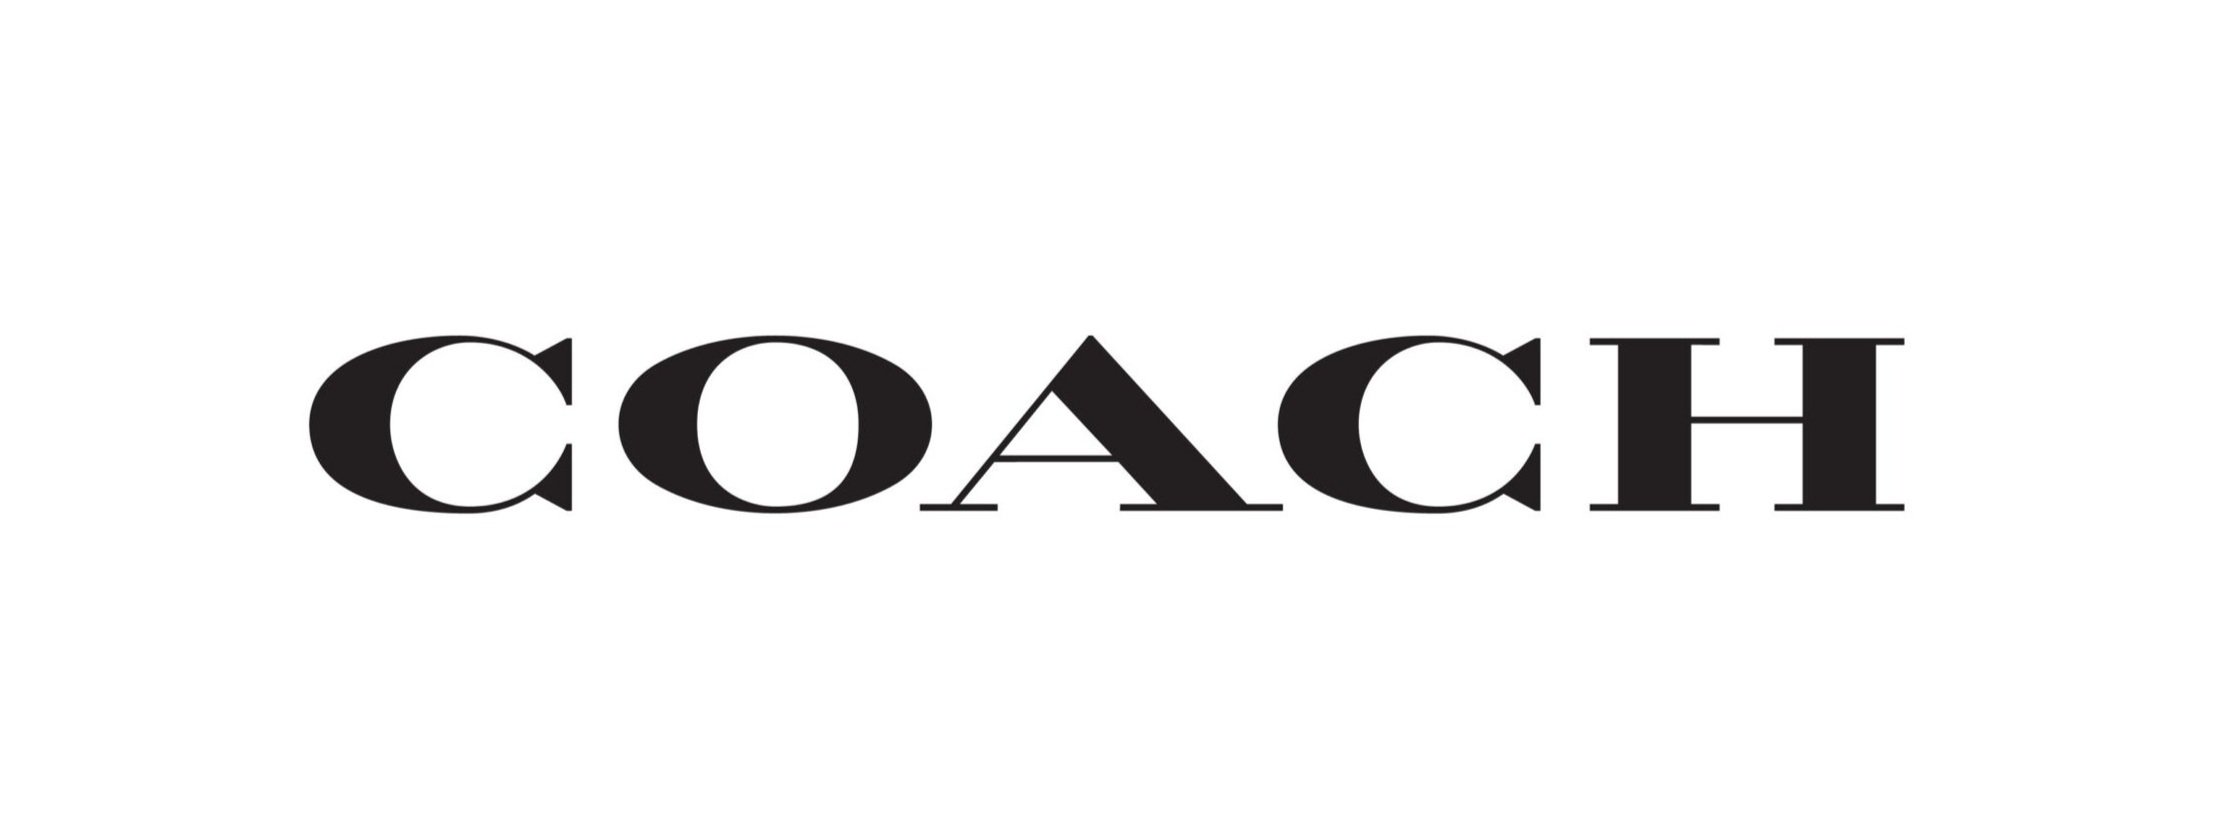 Coach-Logo-Vector-scaled.jpg